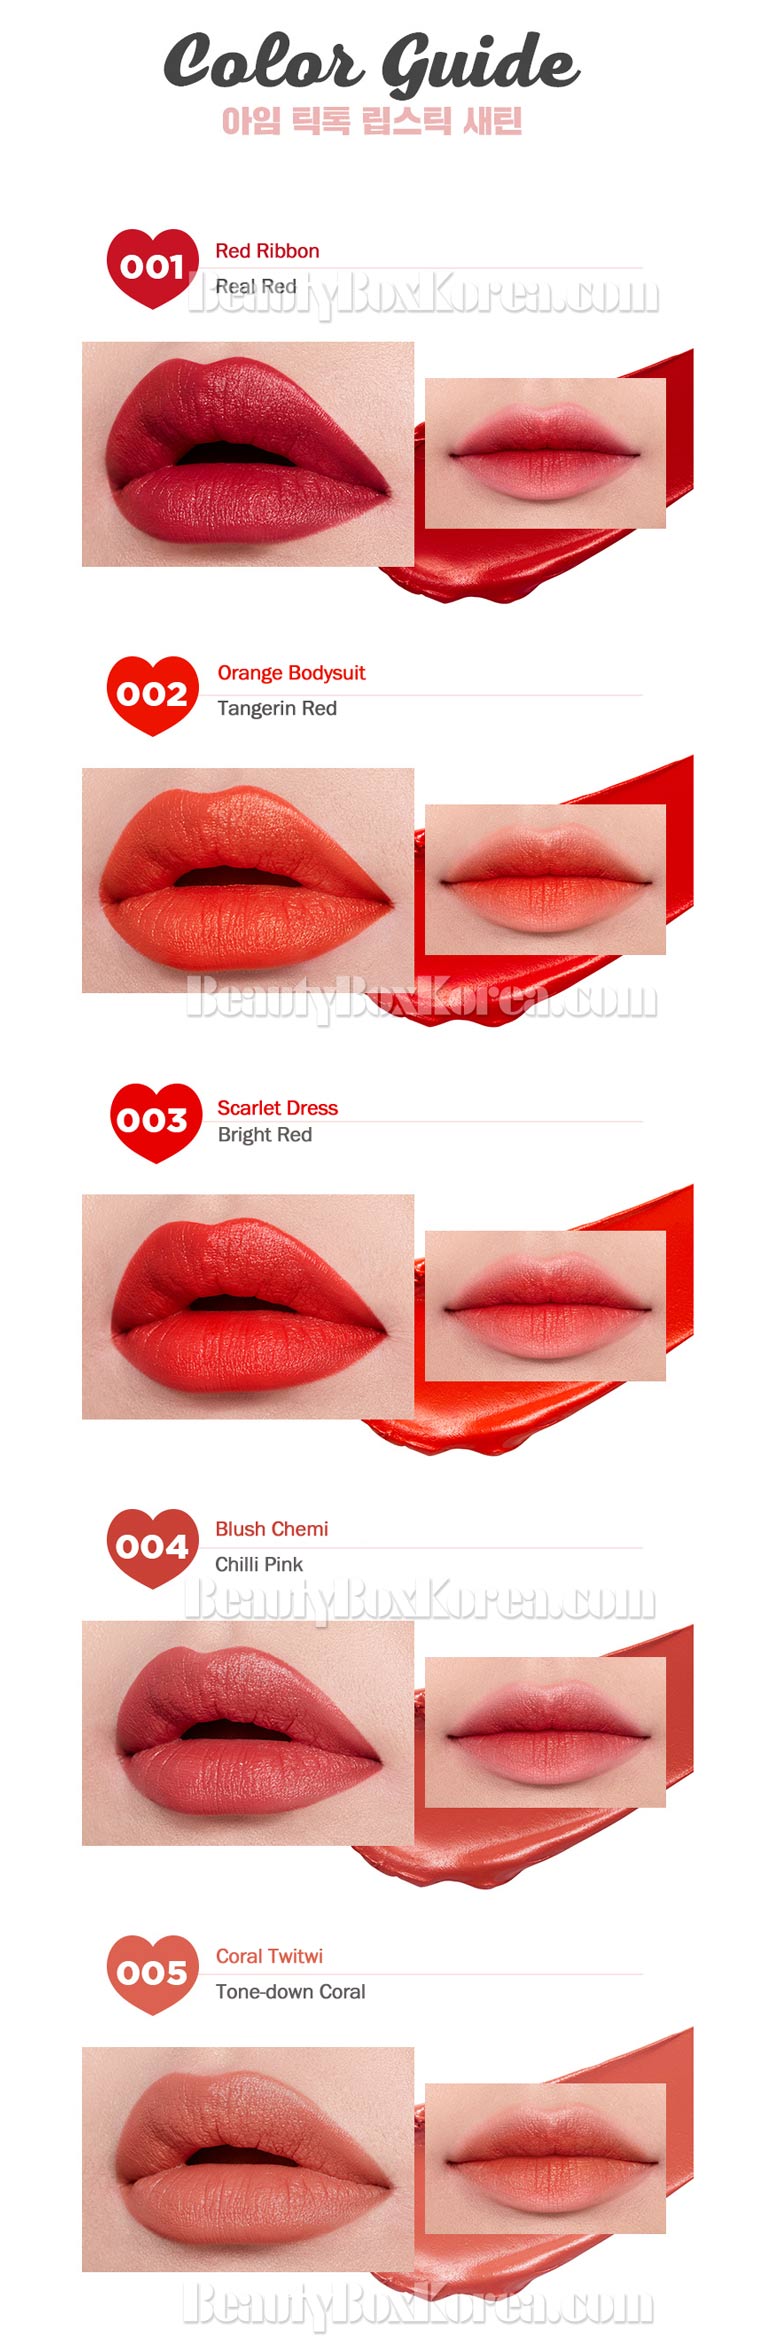 Beauty Box Korea - MEMEBOX I'M MEME I'm Tic Toc Lipstick ...